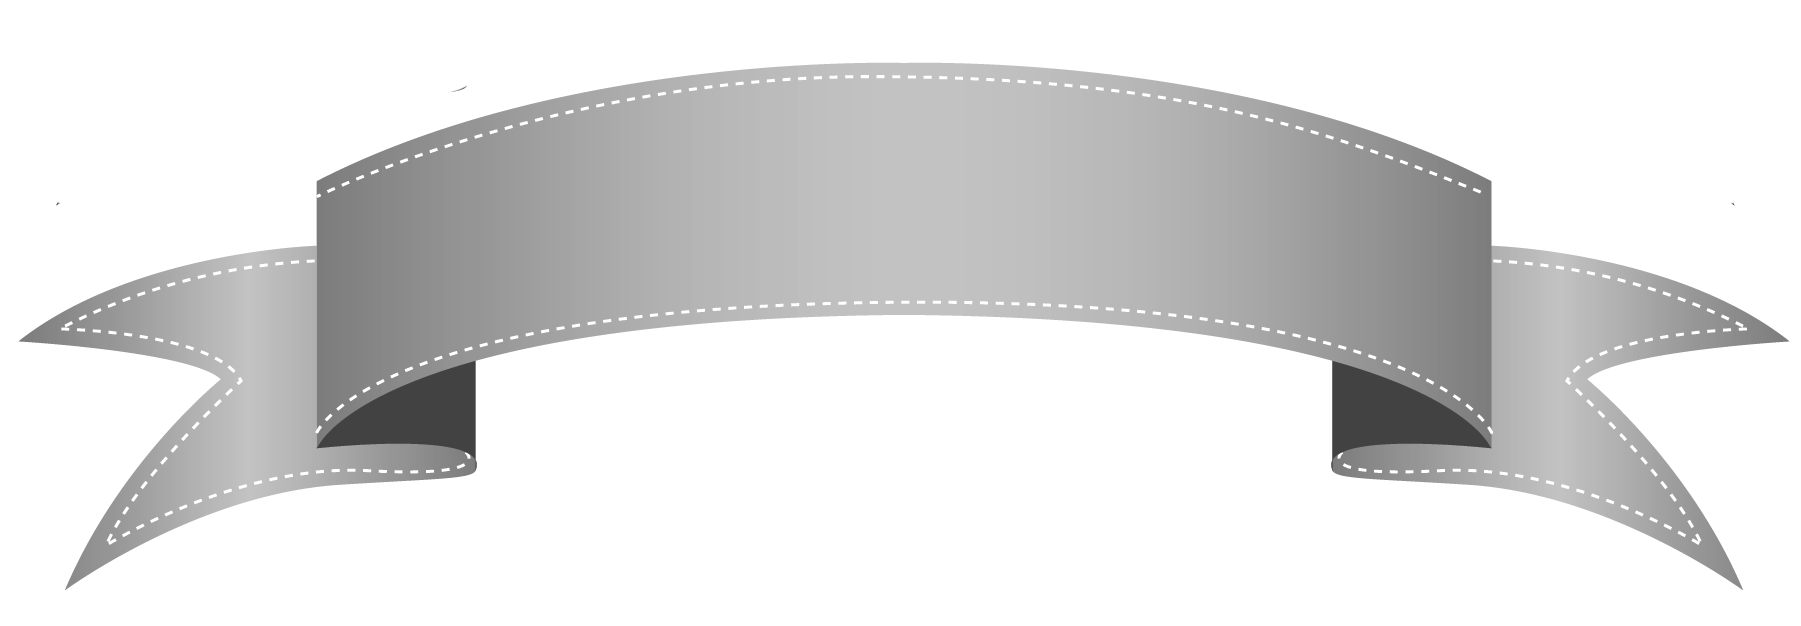 Banner gris PNG imagen Transparente